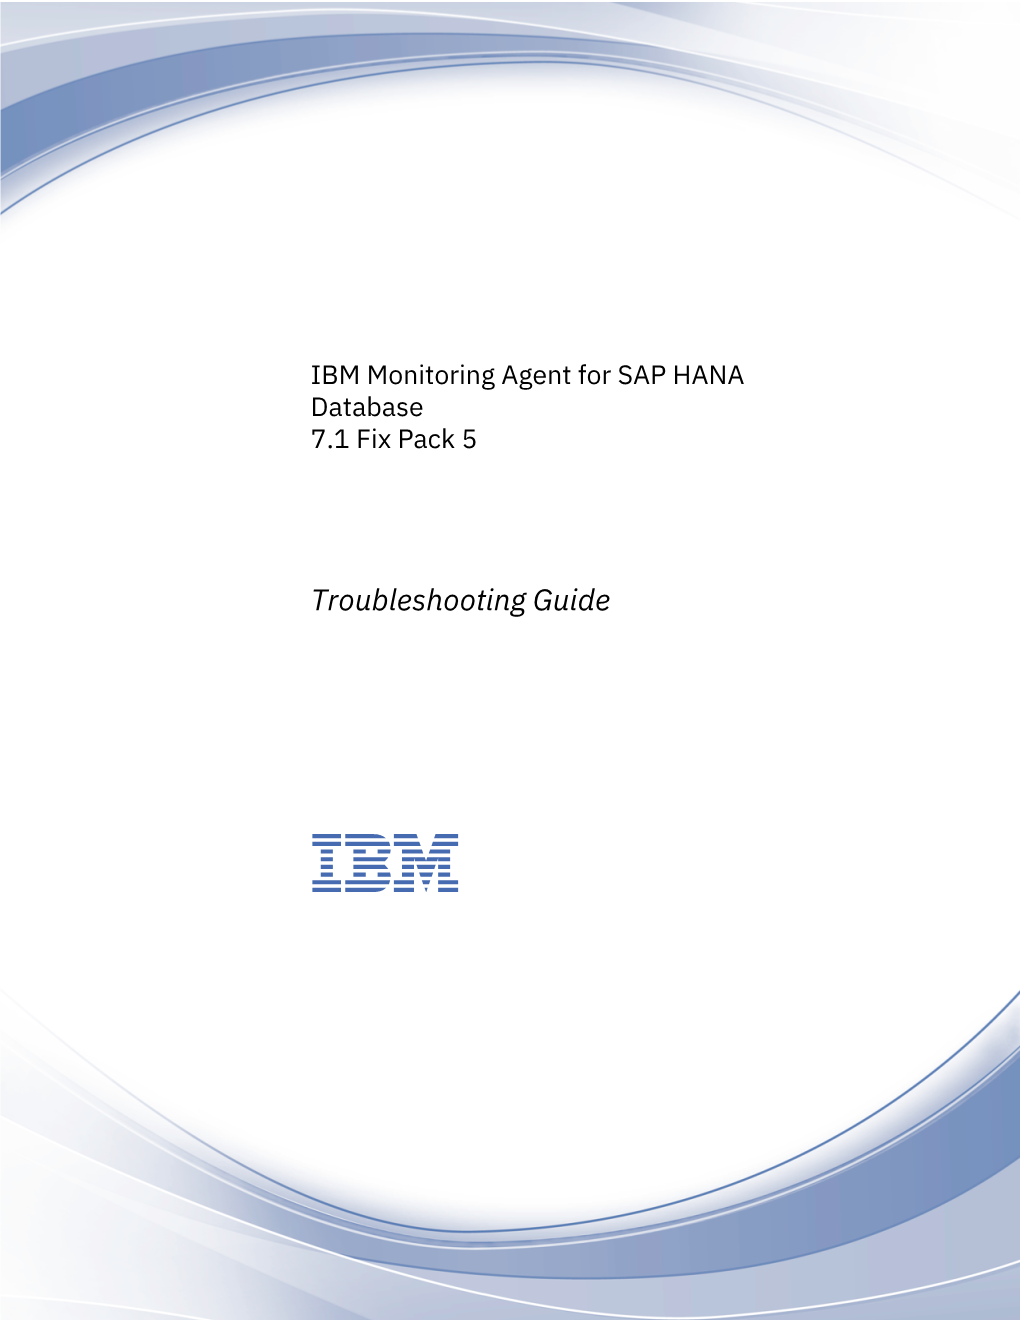 IBM Monitoring Agent for SAP HANA Database 7.1 Fix Pack 5